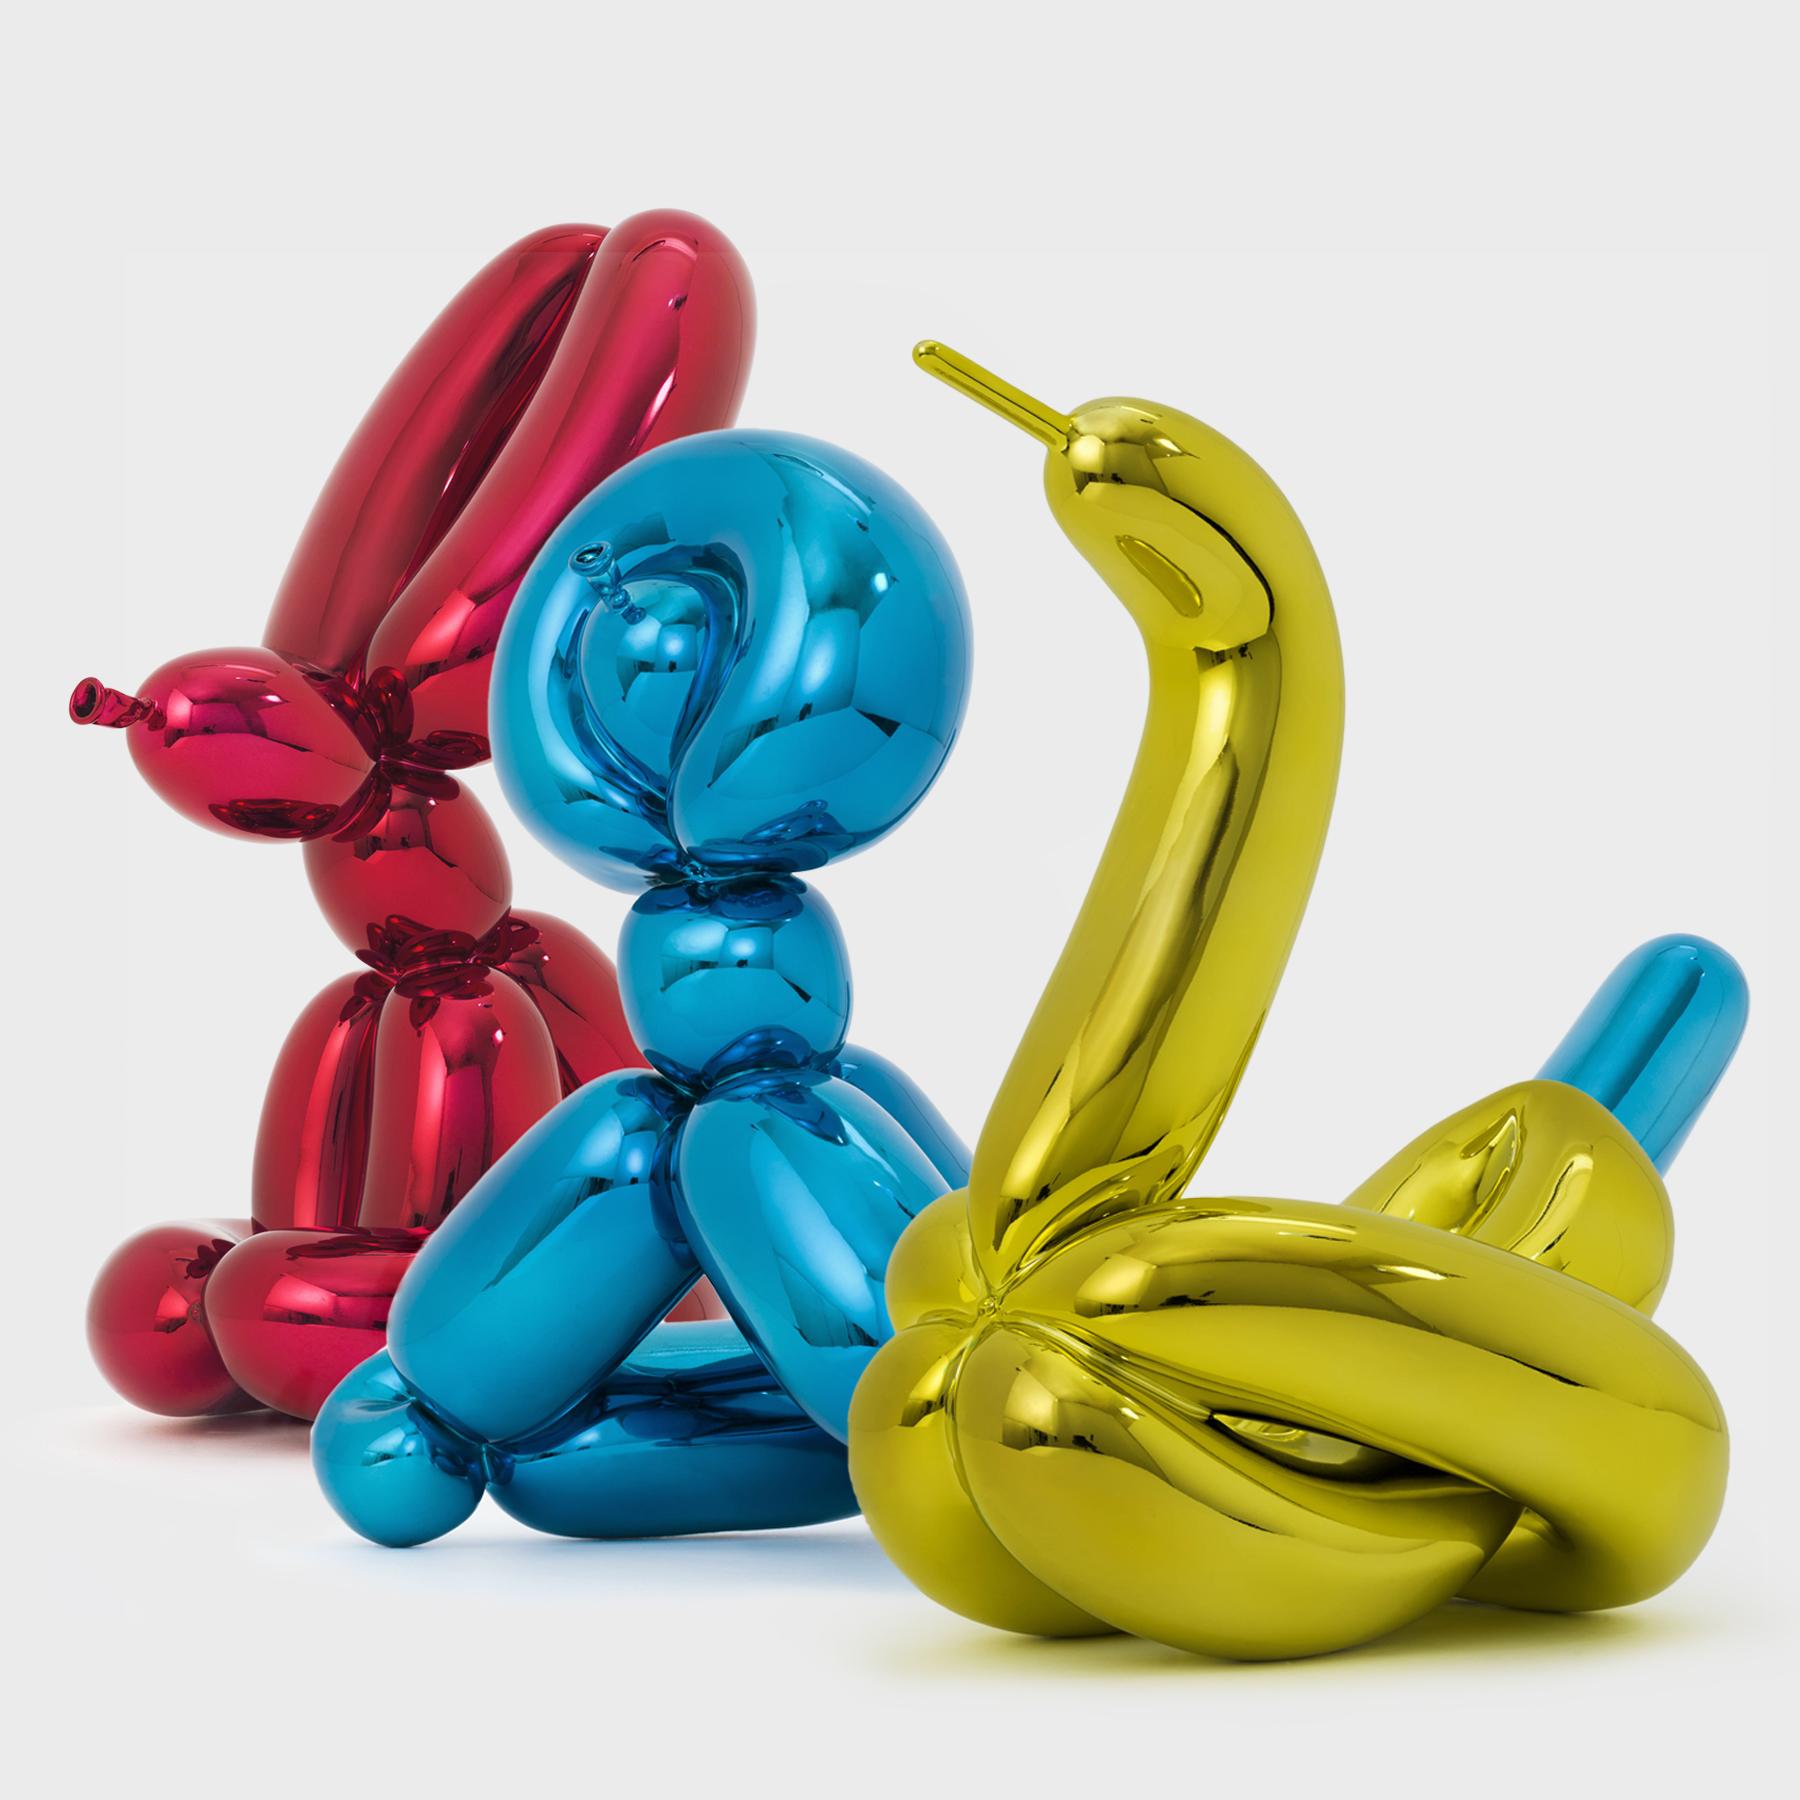 Cet ensemble d'animaux-ballons de Jeff Koons comprend un lapin-ballon, un singe-ballon et un cygne-ballon, en porcelaine hautement réfléchissante. Reprenant le vocabulaire de ses emblématiques sculptures Icone, cet ensemble marque un chapitre